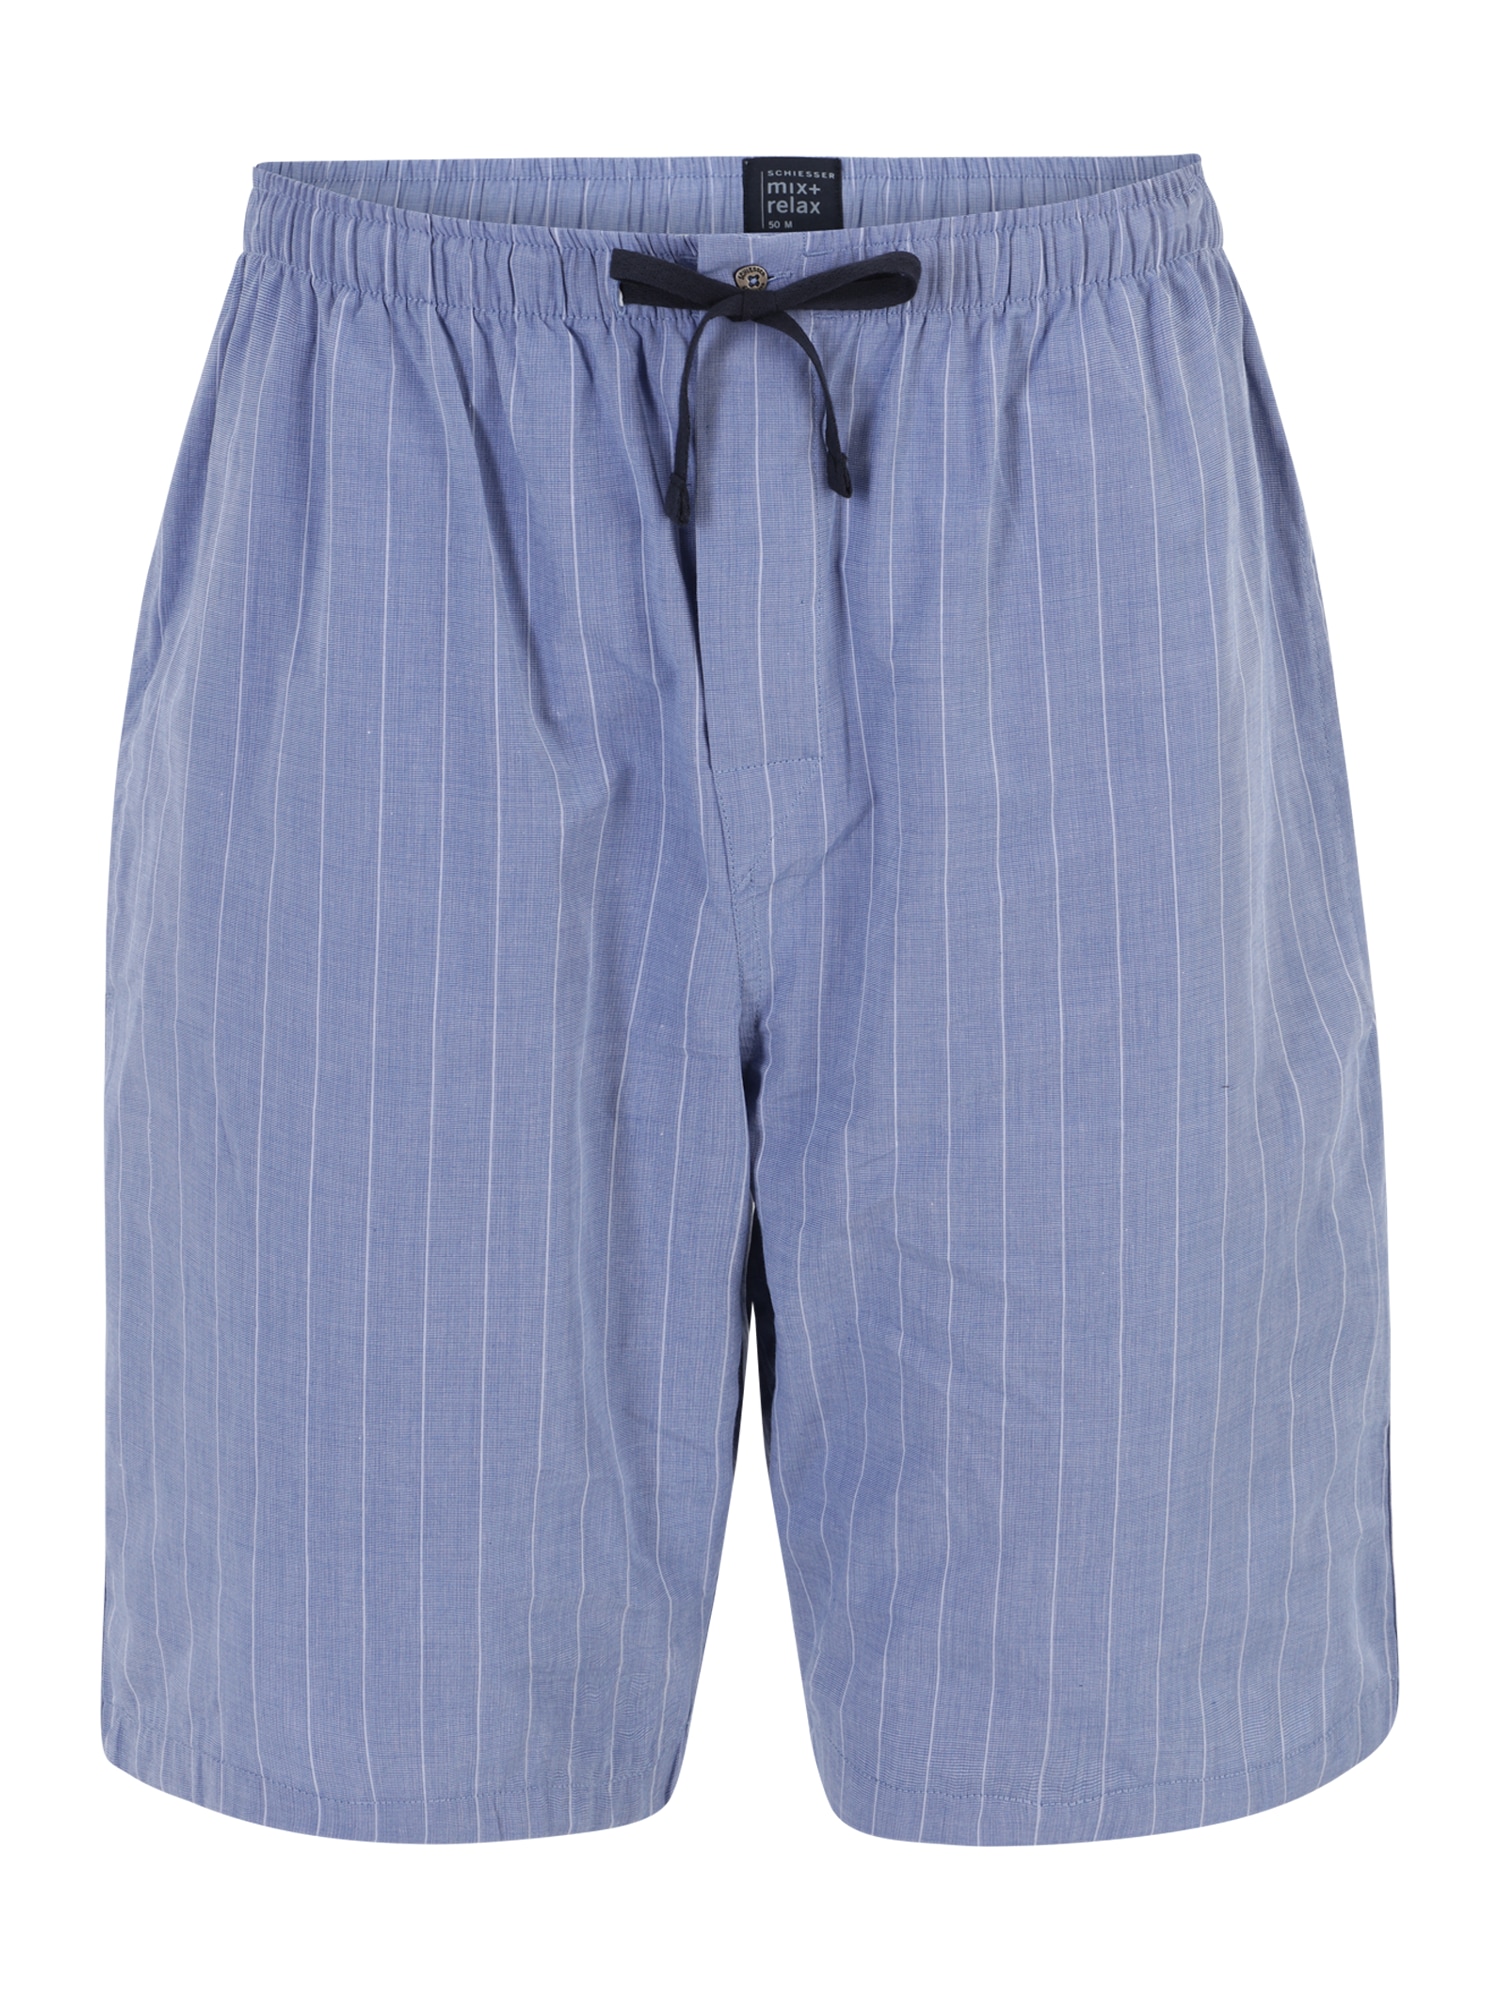 SCHIESSER Панталон пижама  опушено синьо / бяло